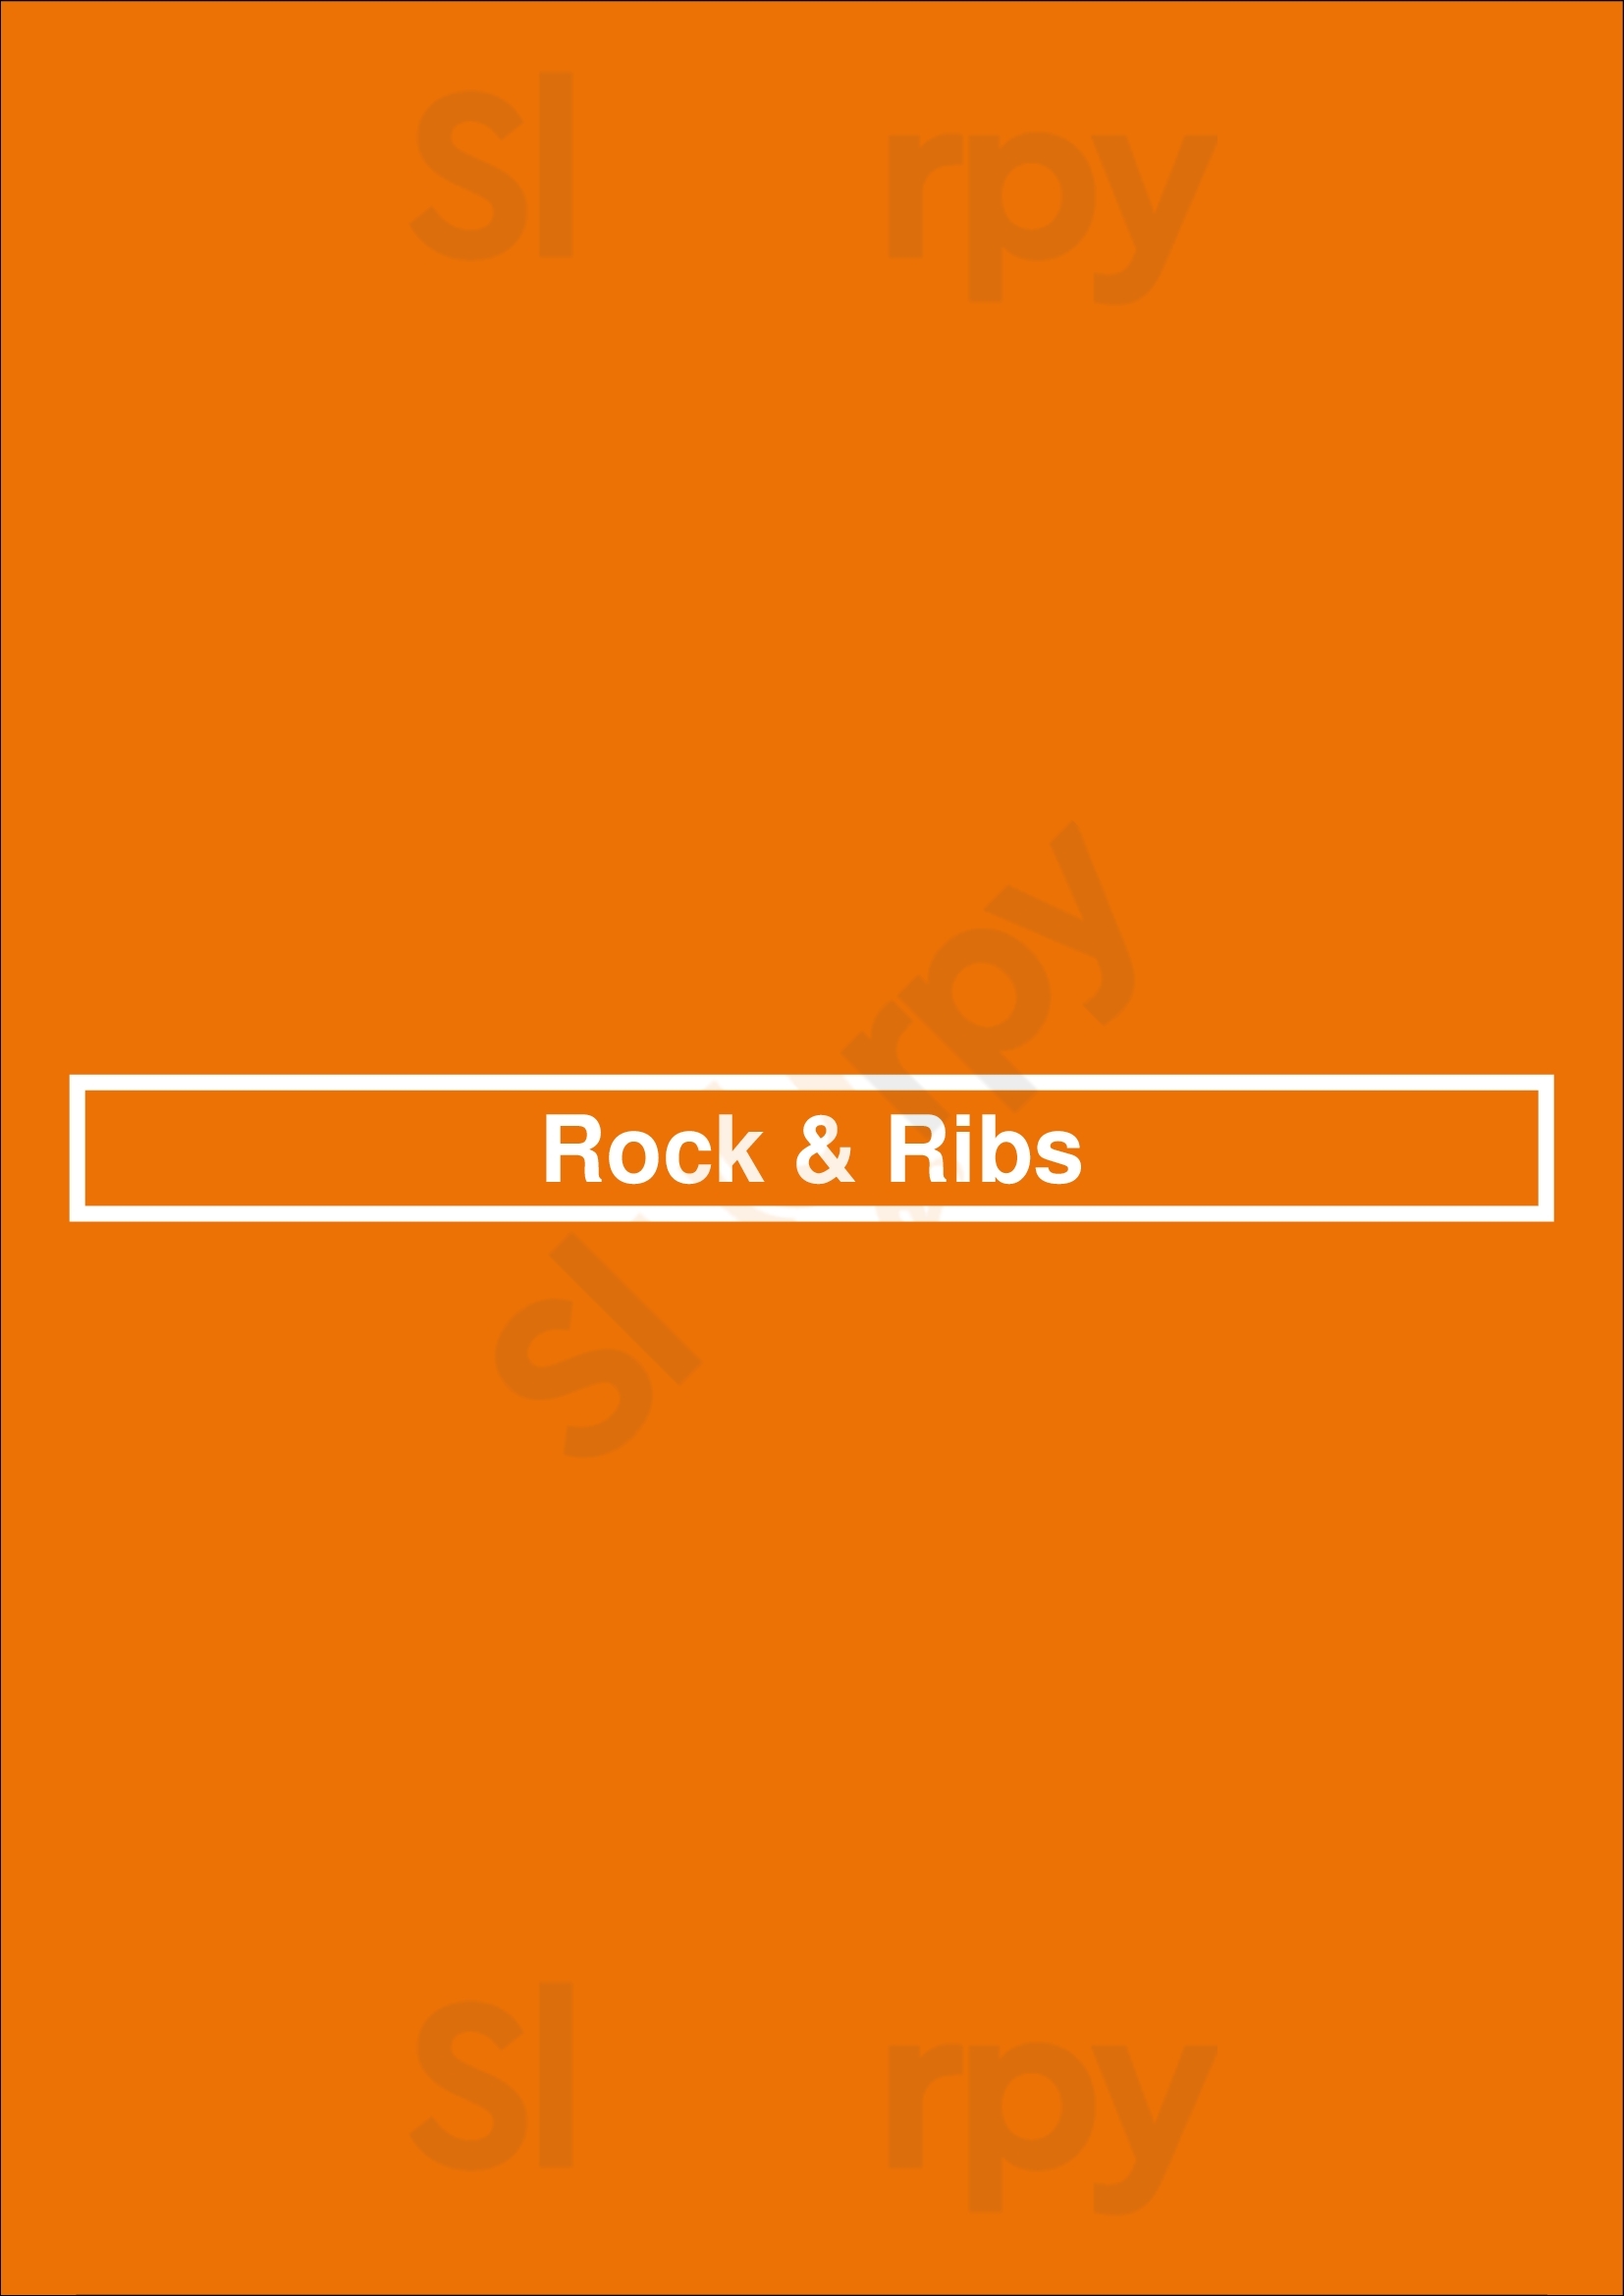 Rock & Ribs Santo André Menu - 1